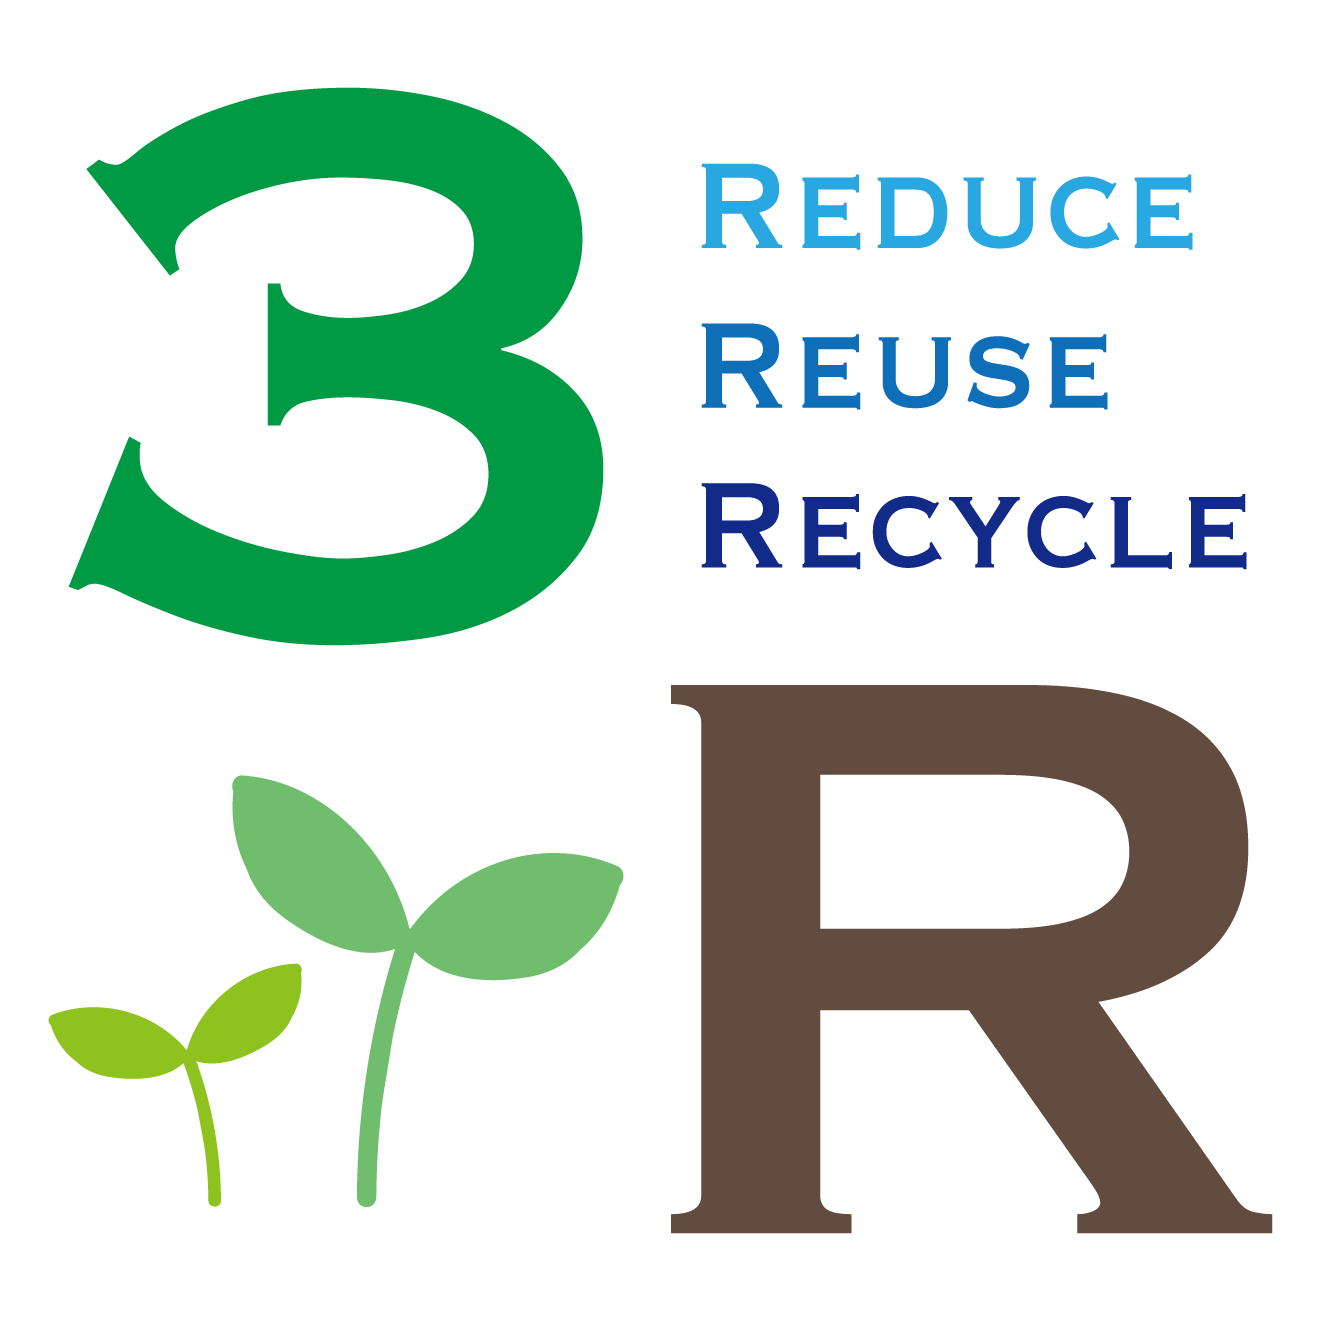 3R(REDUCEリデュース/REUSEリユーズ/ RECYCLEリサイクル)と葉っぱのイラスト【環境問題】 | 商用フリー(無料)のイラスト